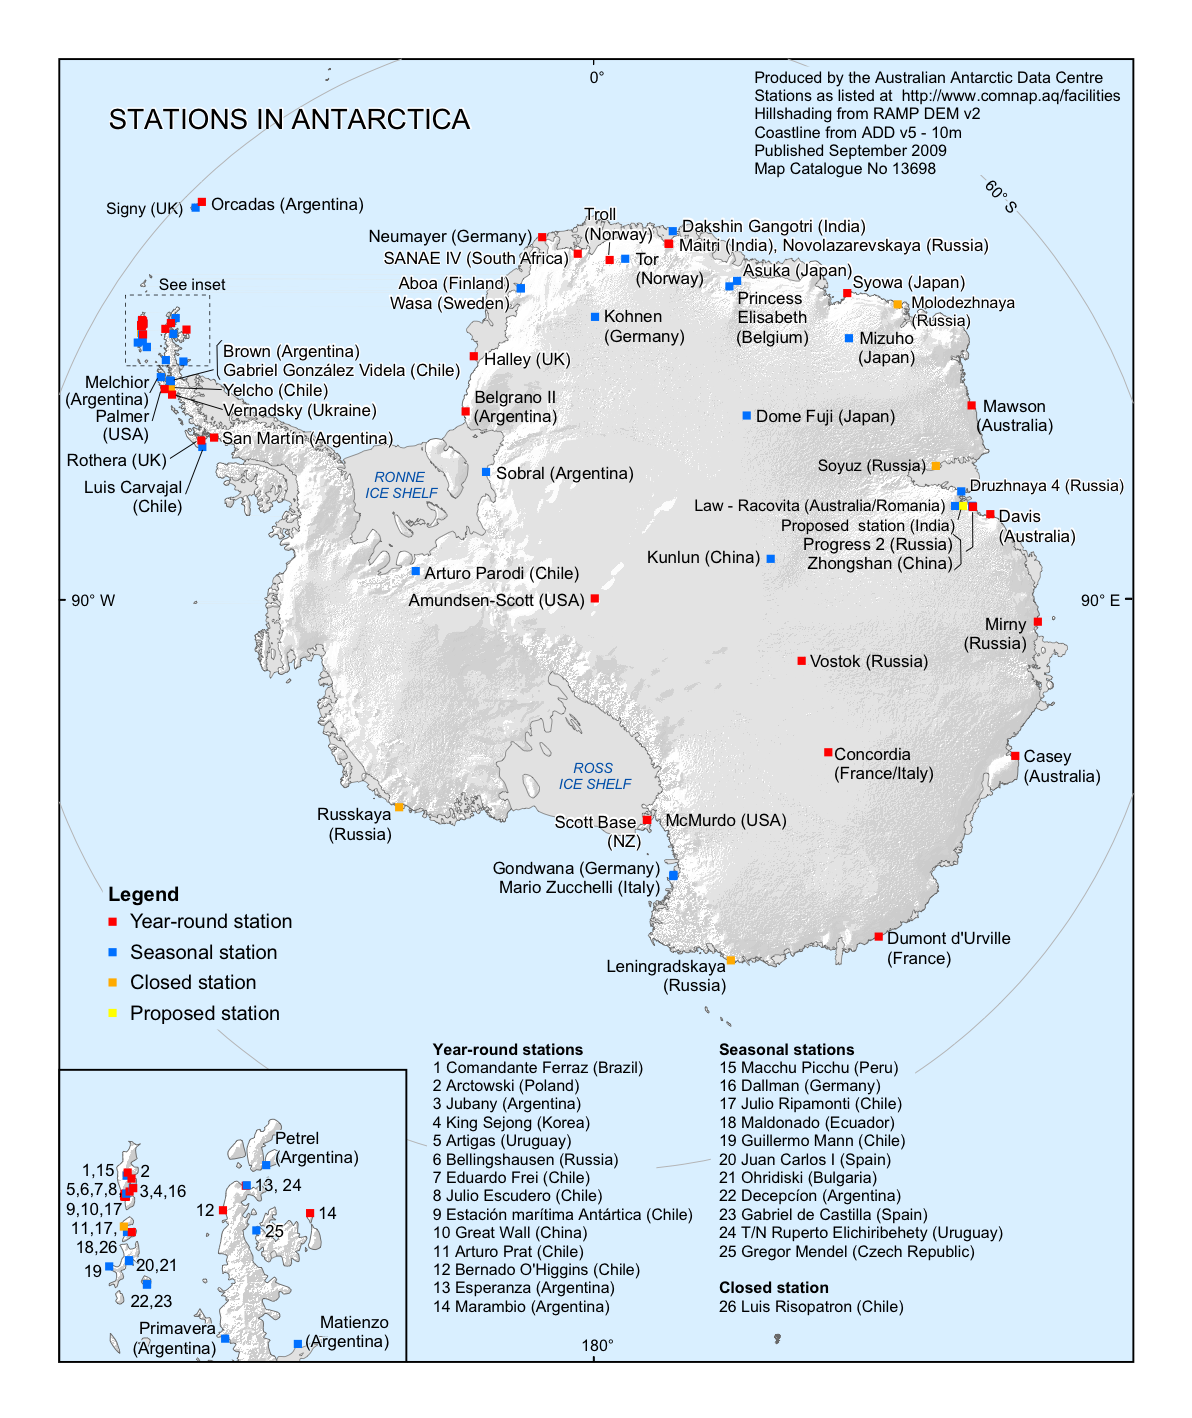 Bases de investigaciones en la Antártida 2009